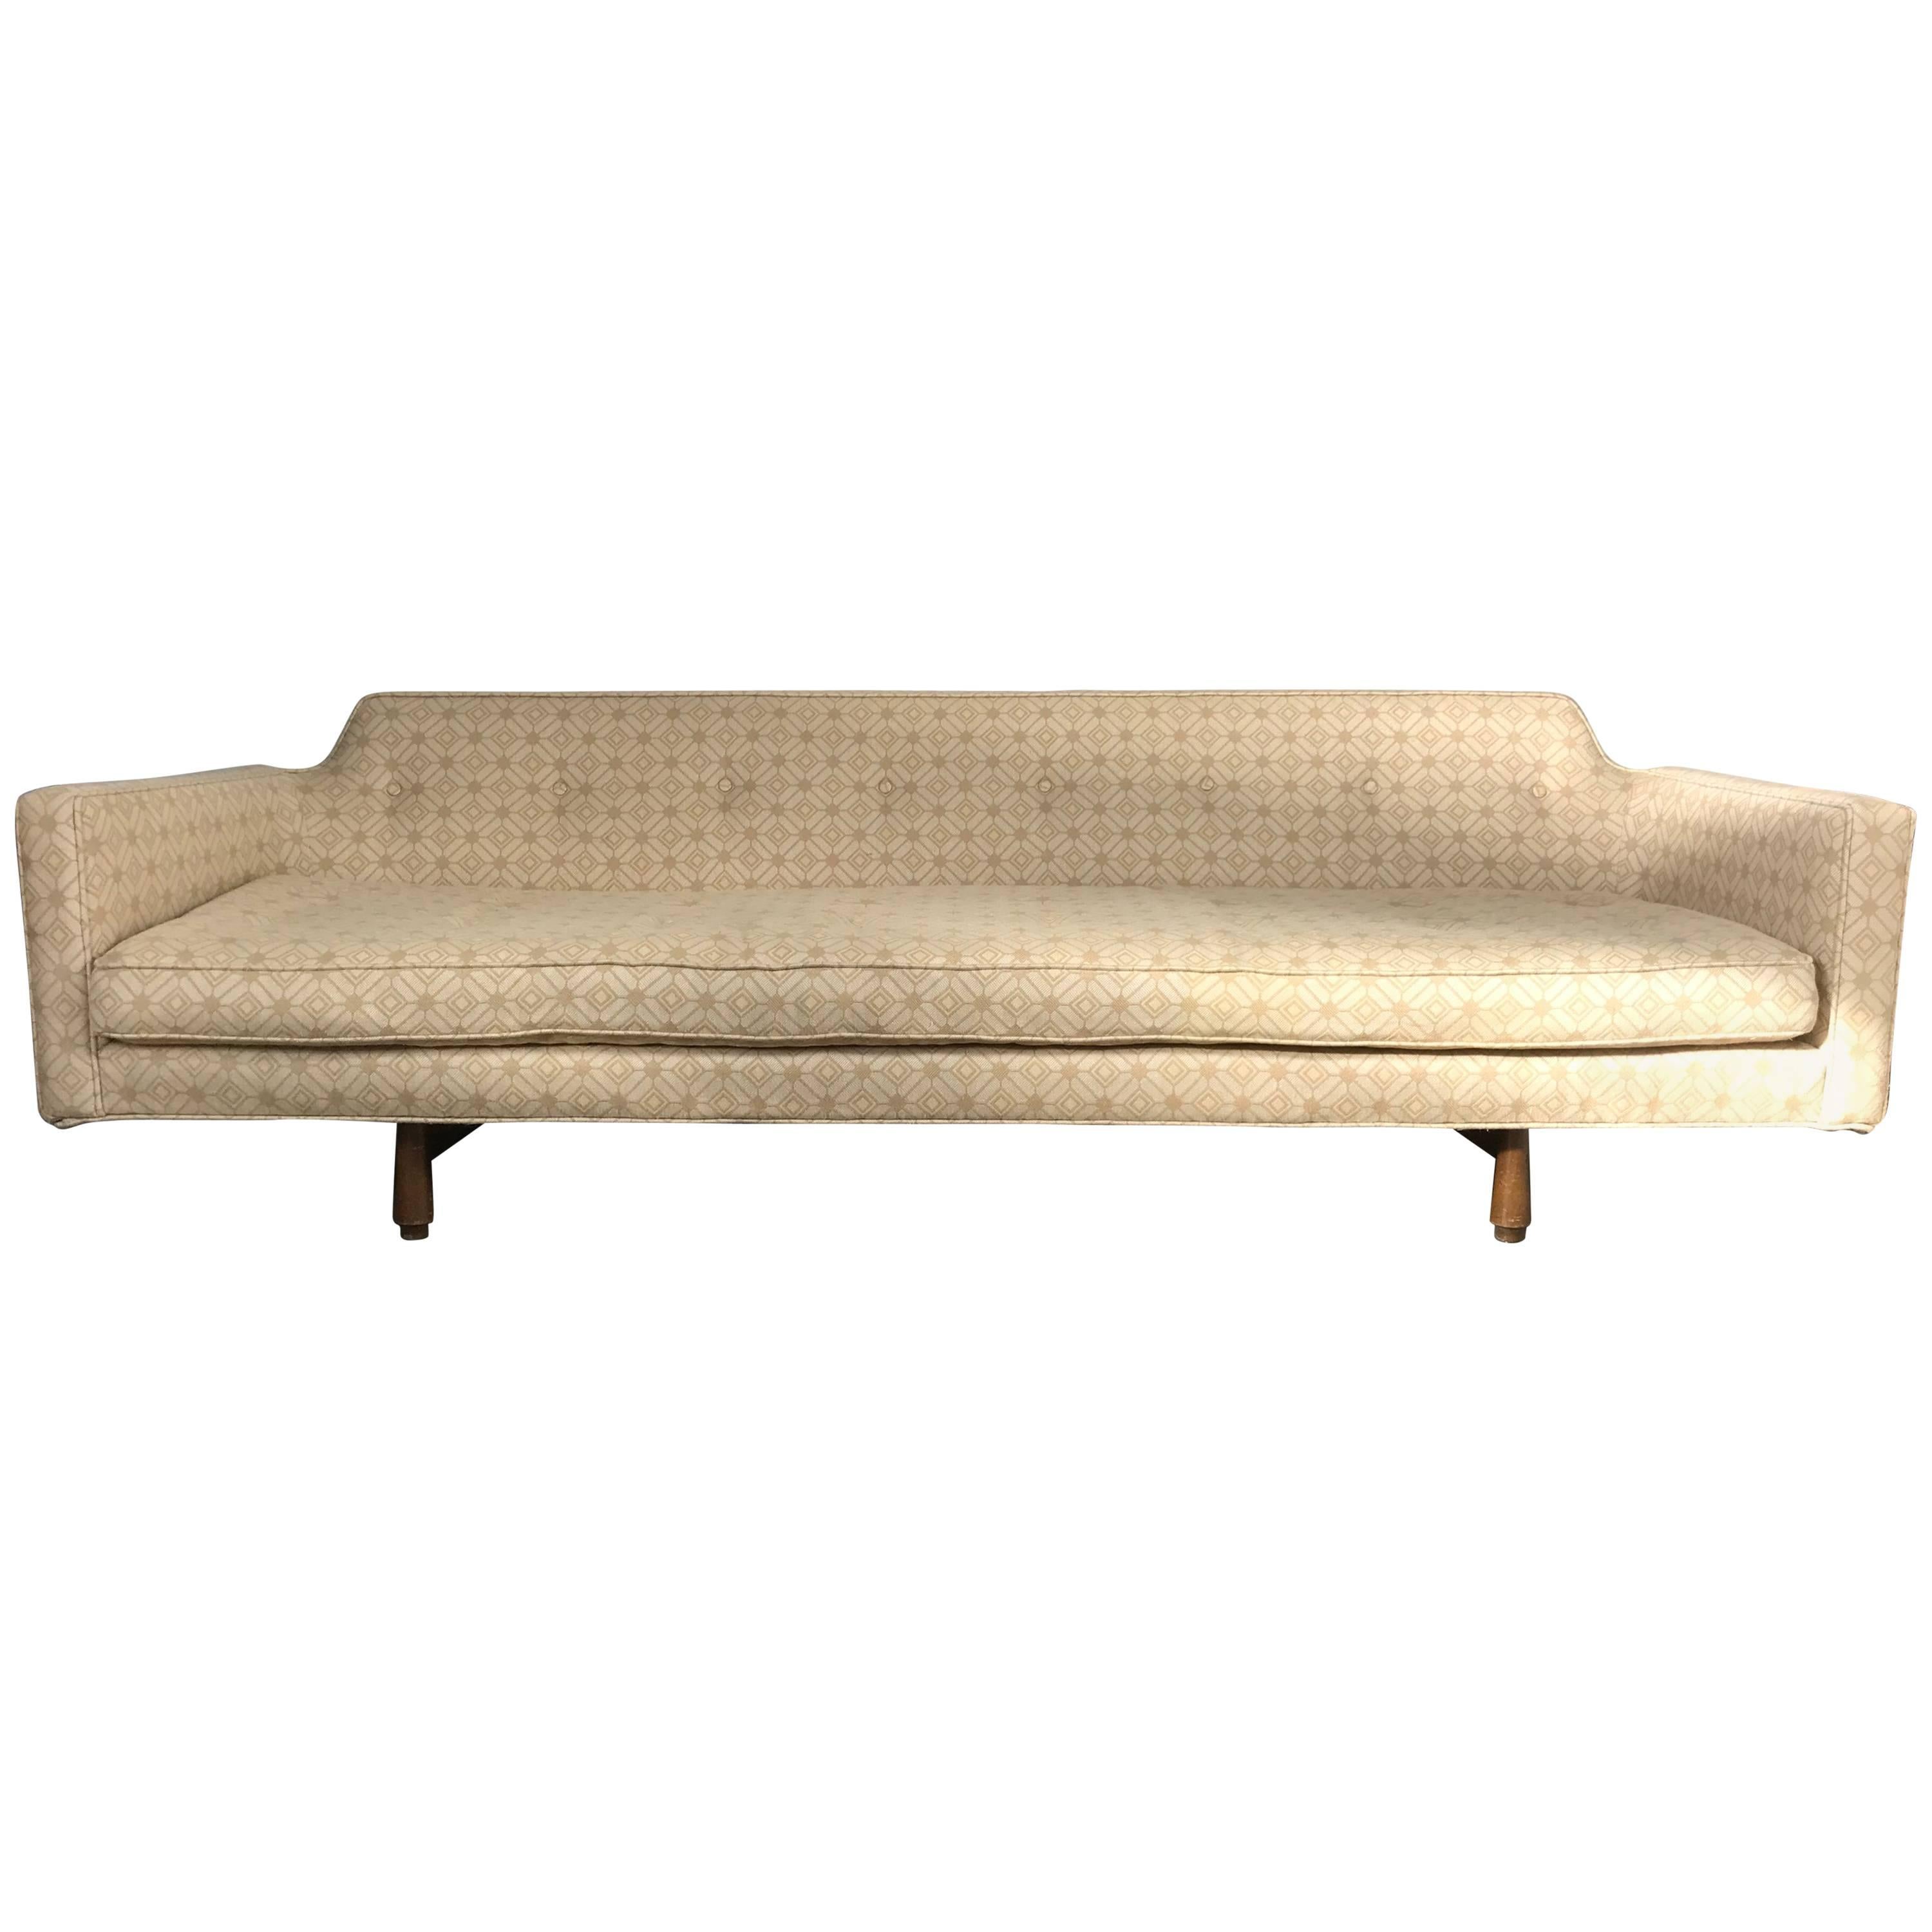 Modernist Sofa Designed by Edward Wormley for Dunbar